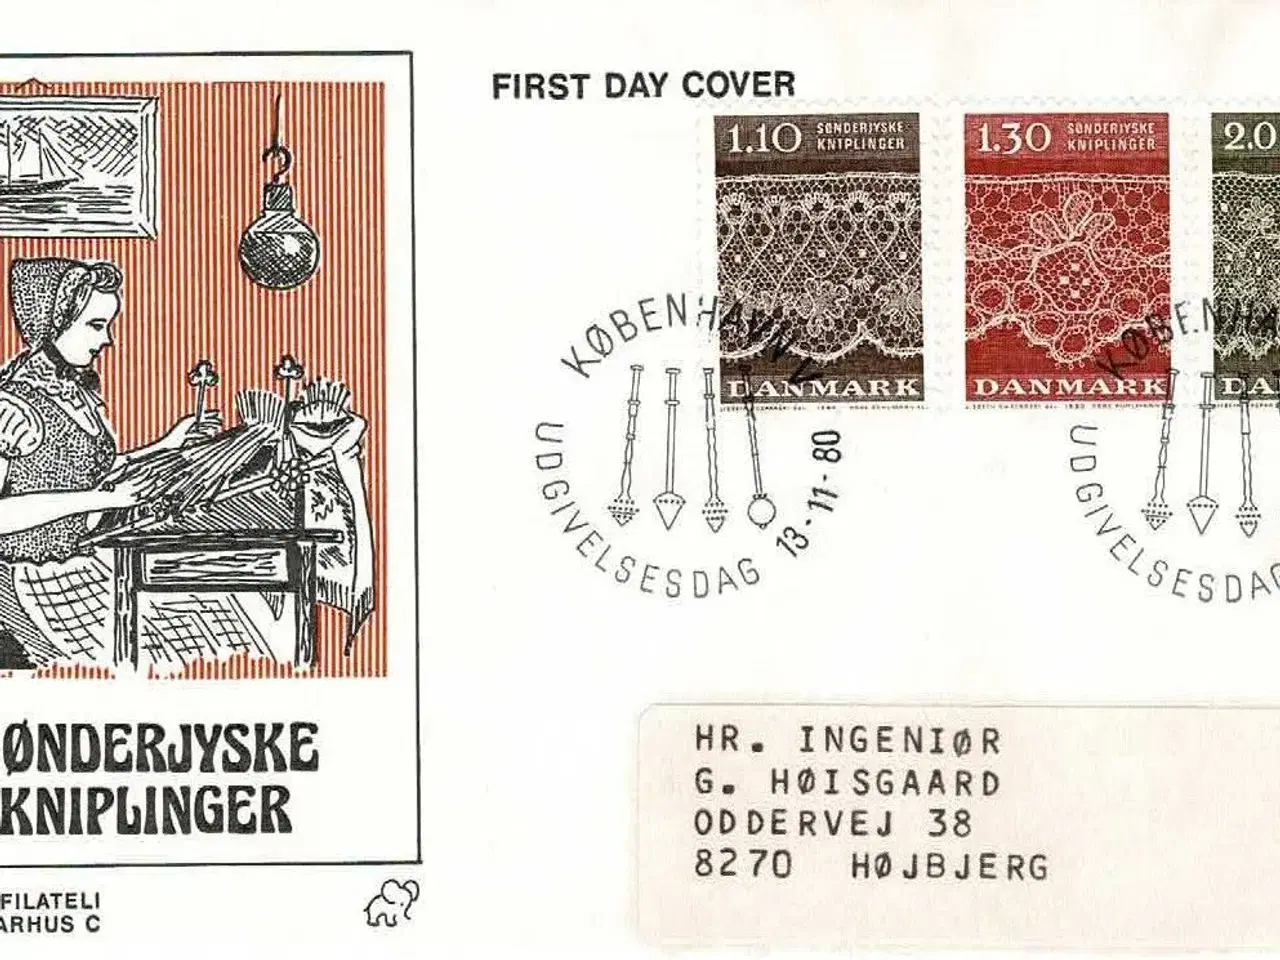 Billede 1 - Danmark 1980, Kniplinger; Førstedagskuvert